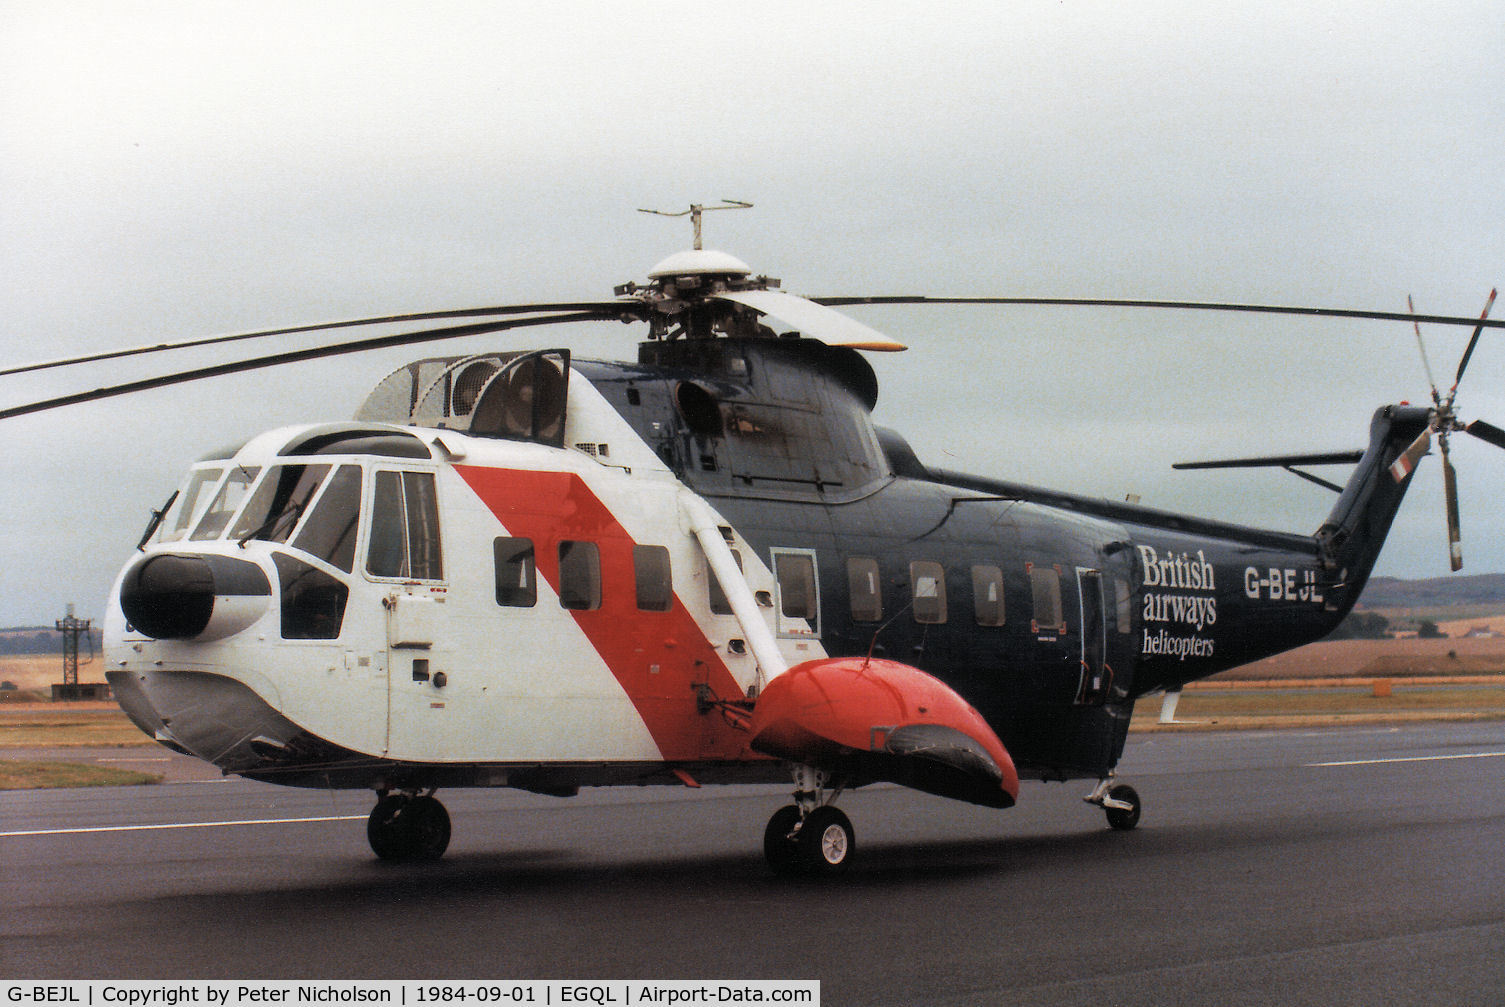 G-BEJL, 1964 Sikorsky S-61N C/N 61224, S-61N of British Airways Helicopters on display at the 1984 RAF Leuchars Airshow.